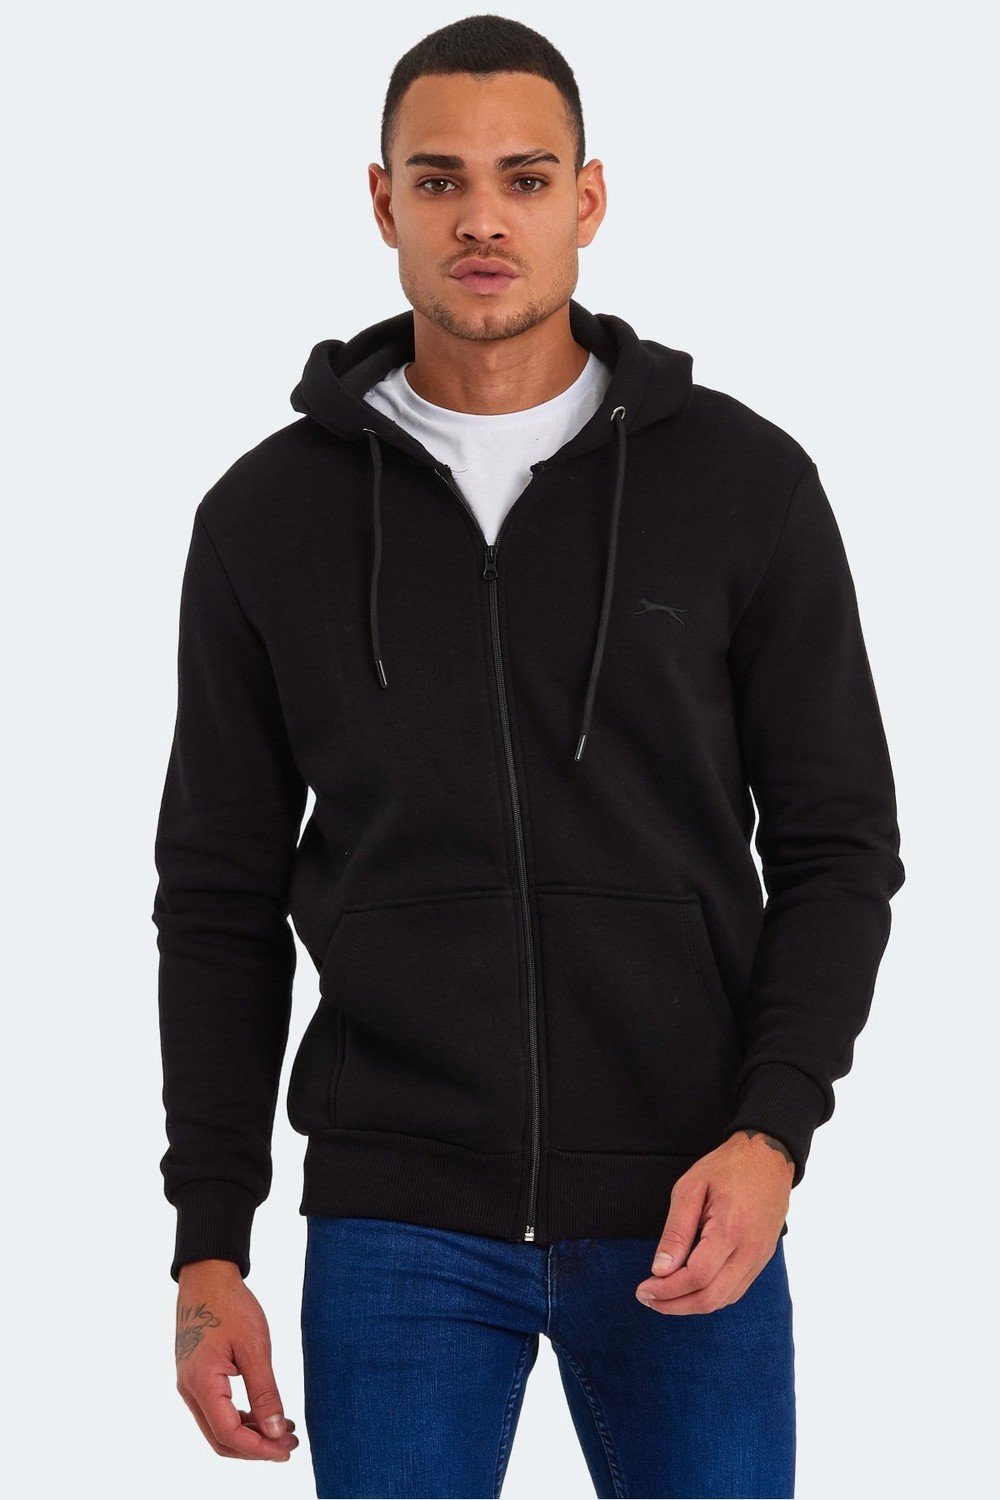 Slazenger Sweatshirt - Black